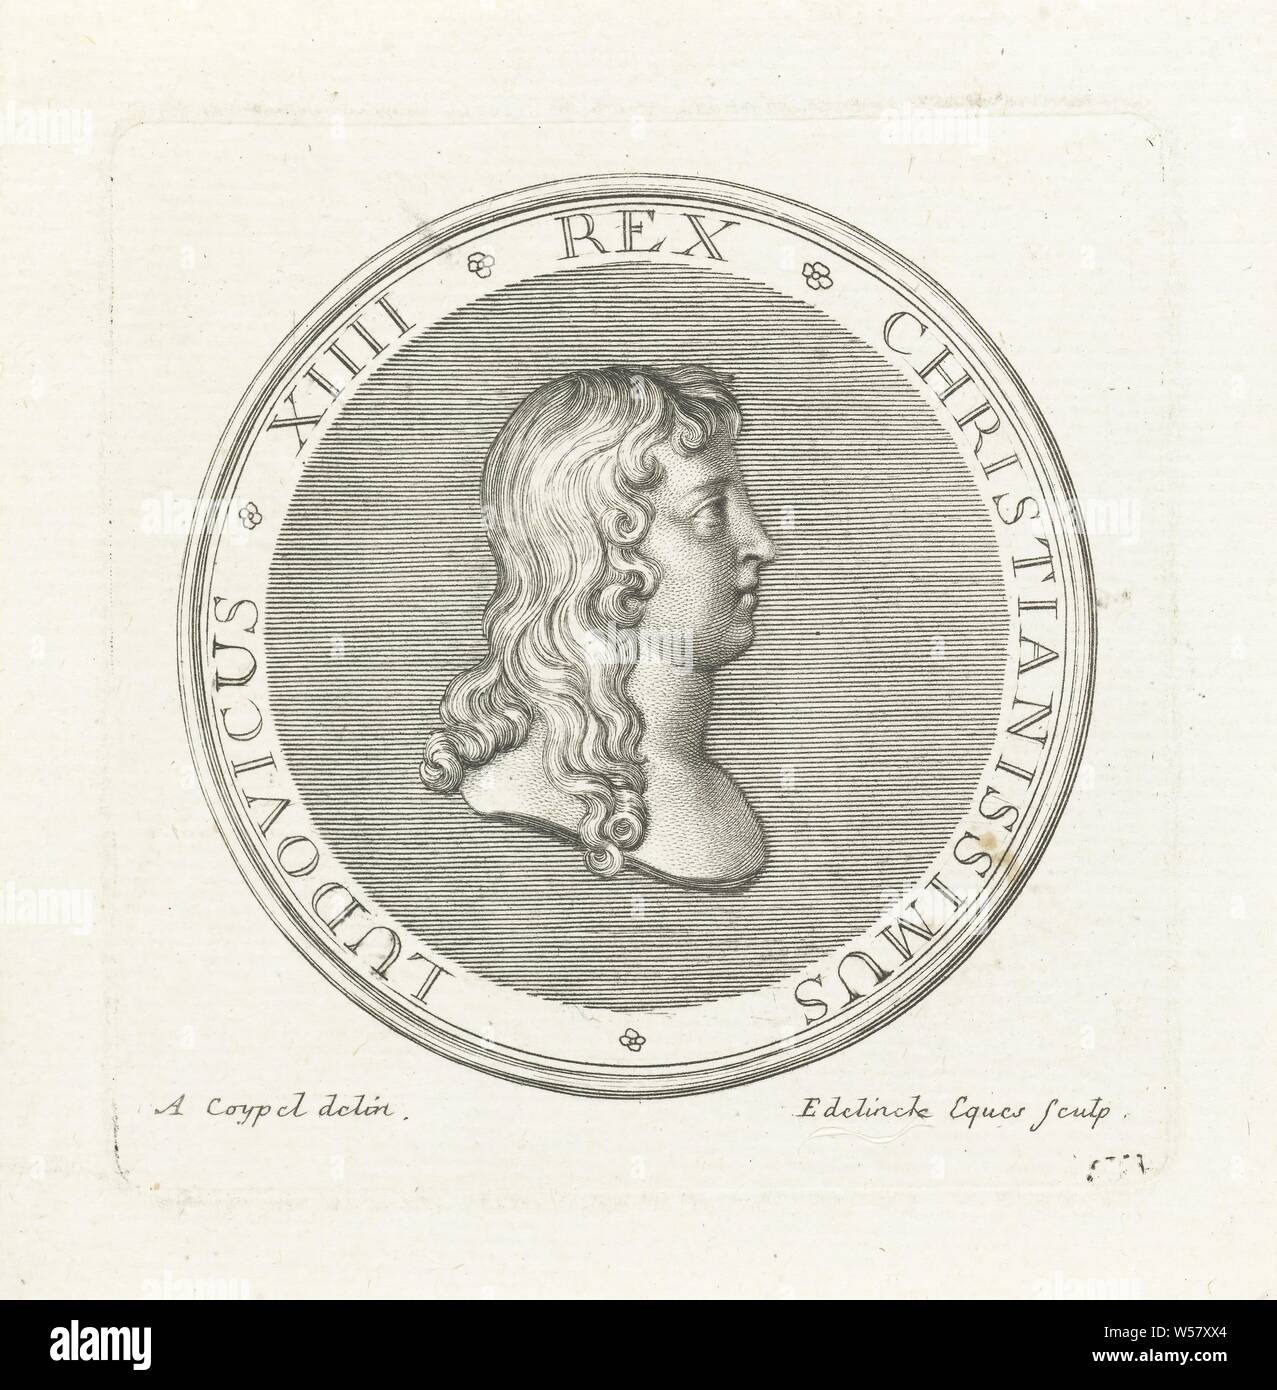 Medaille mit Büste von Ludwig XIV., der ein Abzeichen mit Büste und Profil von Louis XIV, zunächst nach der Schlacht von Rocroi in 1643., Louis XIV (König von Frankreich), Gerard Edelinck (auf Objekt erwähnt), Paris, 1702, Papier, Gravur, H 82 mm x B 81 mm Stockfoto